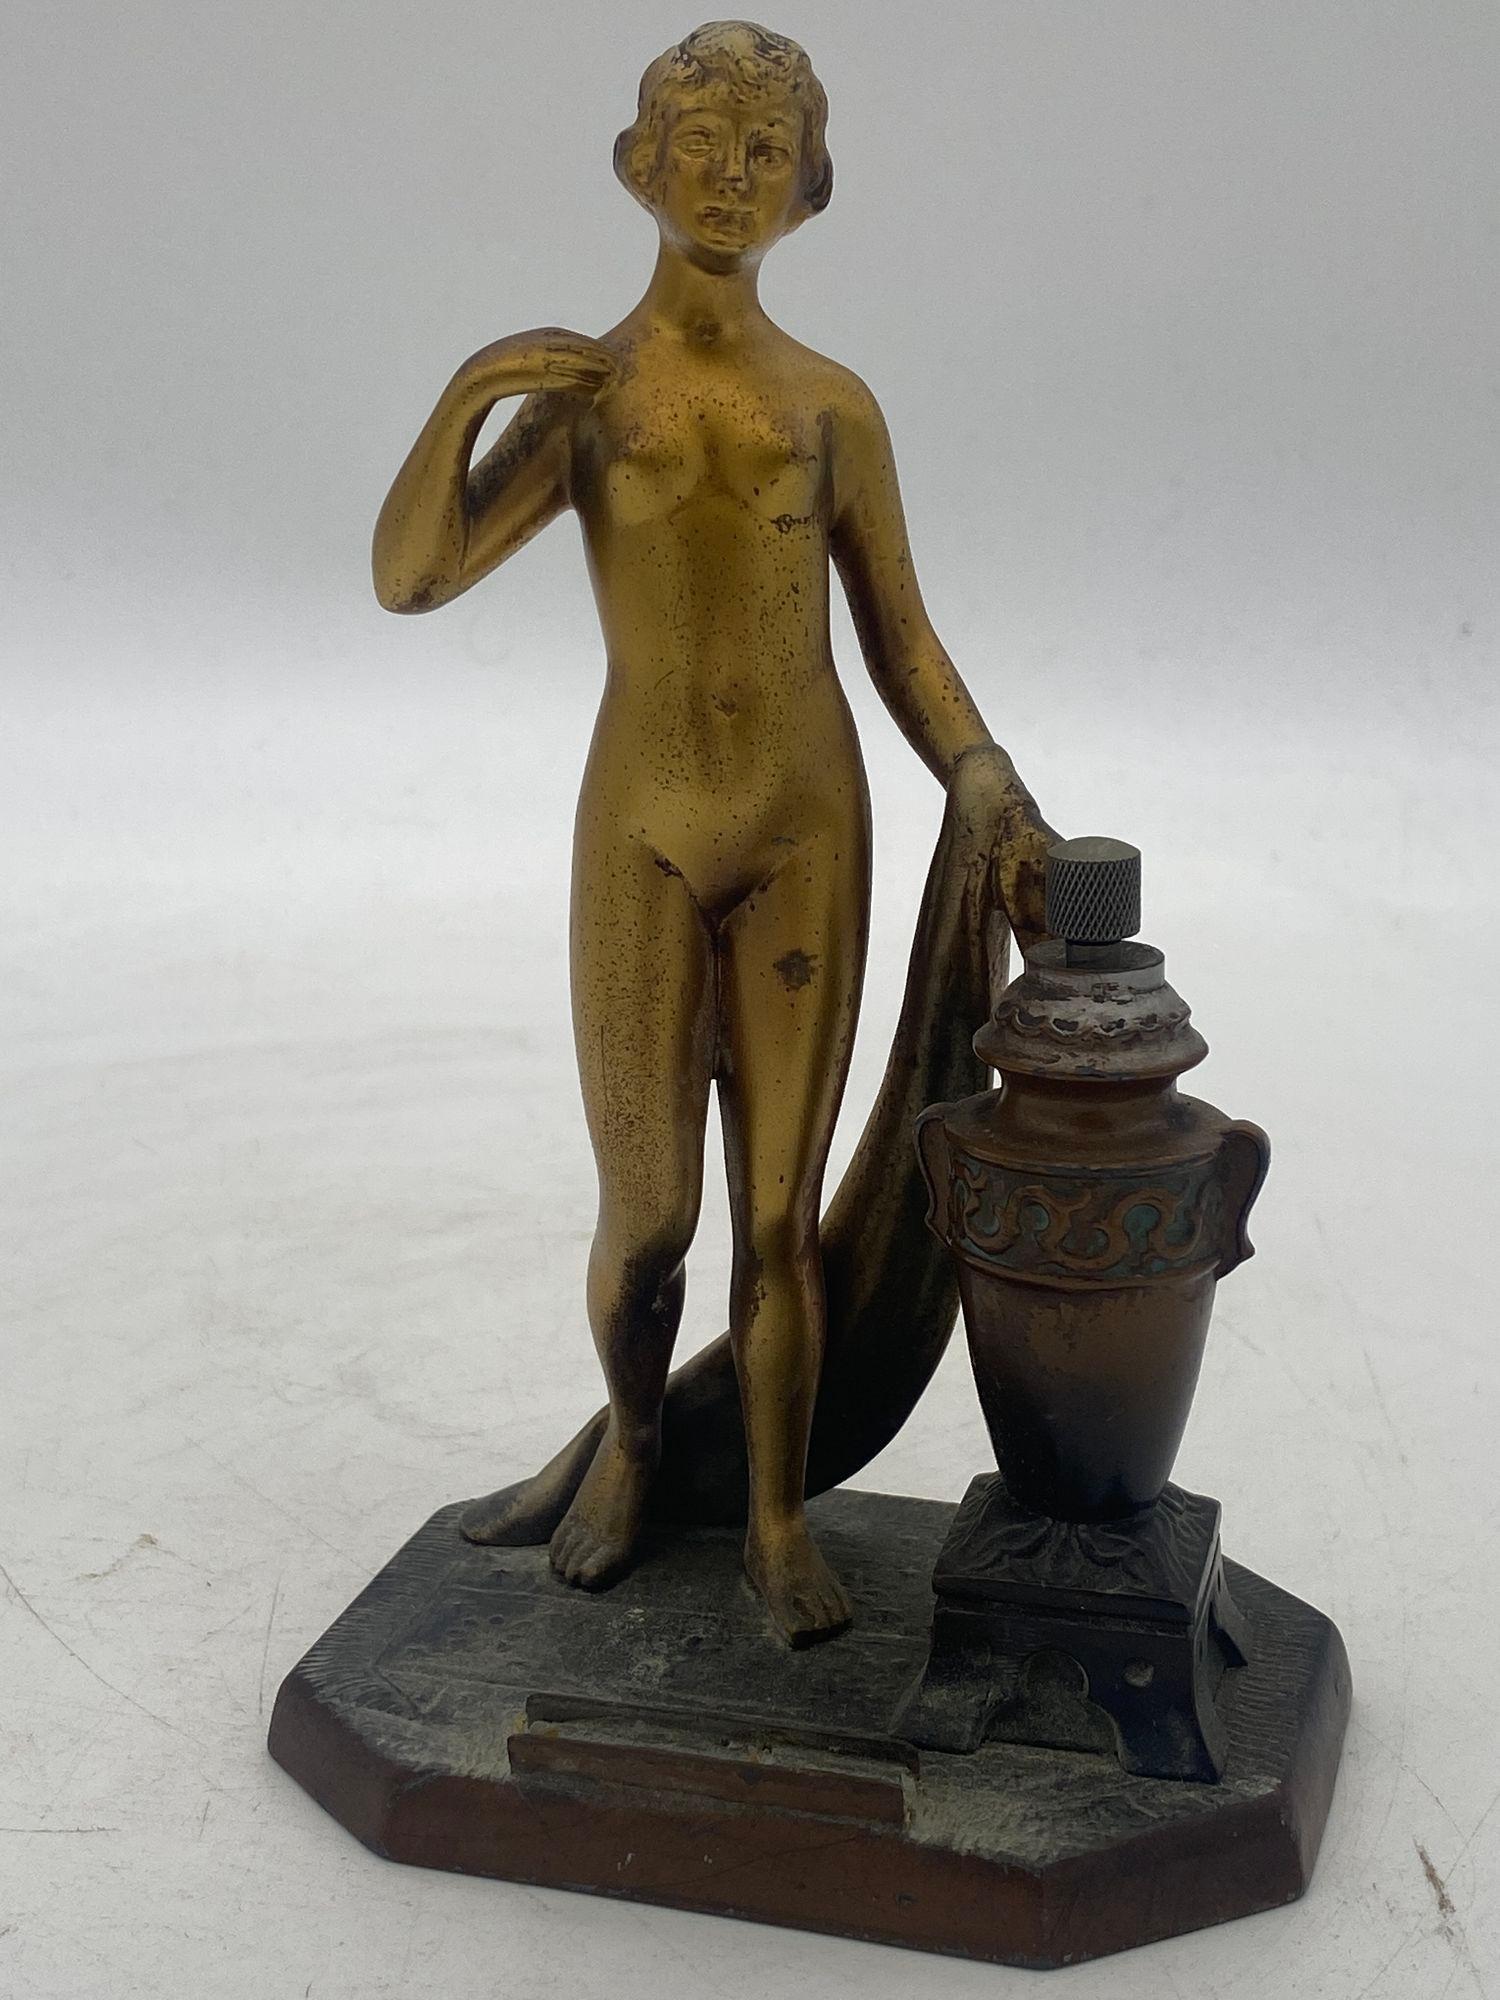 Briquet de table à embout de torche en métal spéléo représentant une déesse grecque nue, dorée au bronze. L'urne à côté d'elle contient l'huile et le grattoir avec le support pour le flit en fort.

Vers 1930